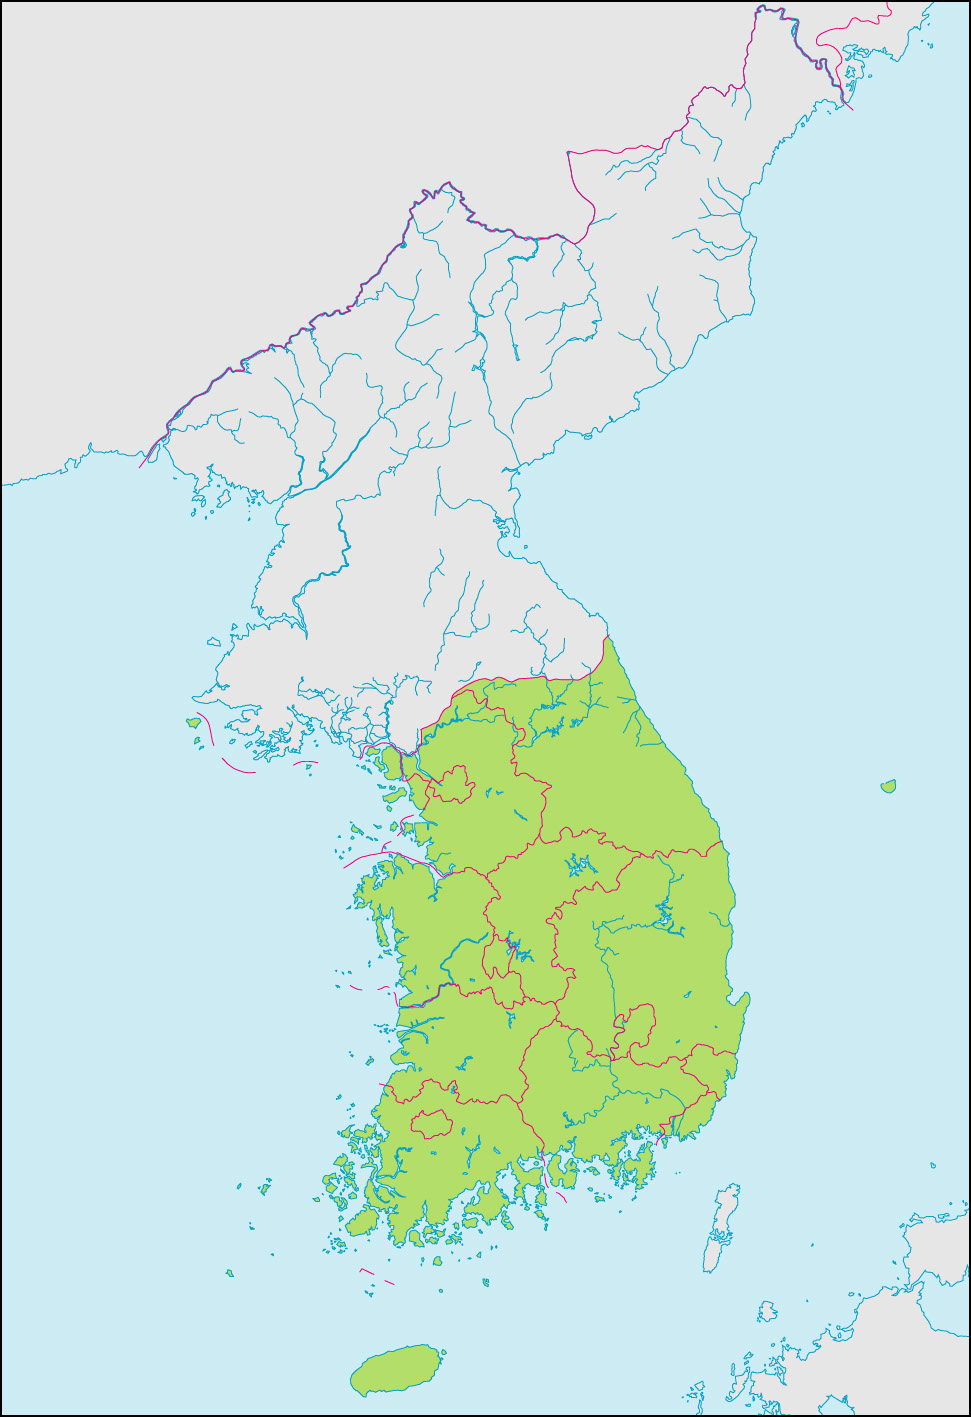 韓国地図(行政区分記載)の画像